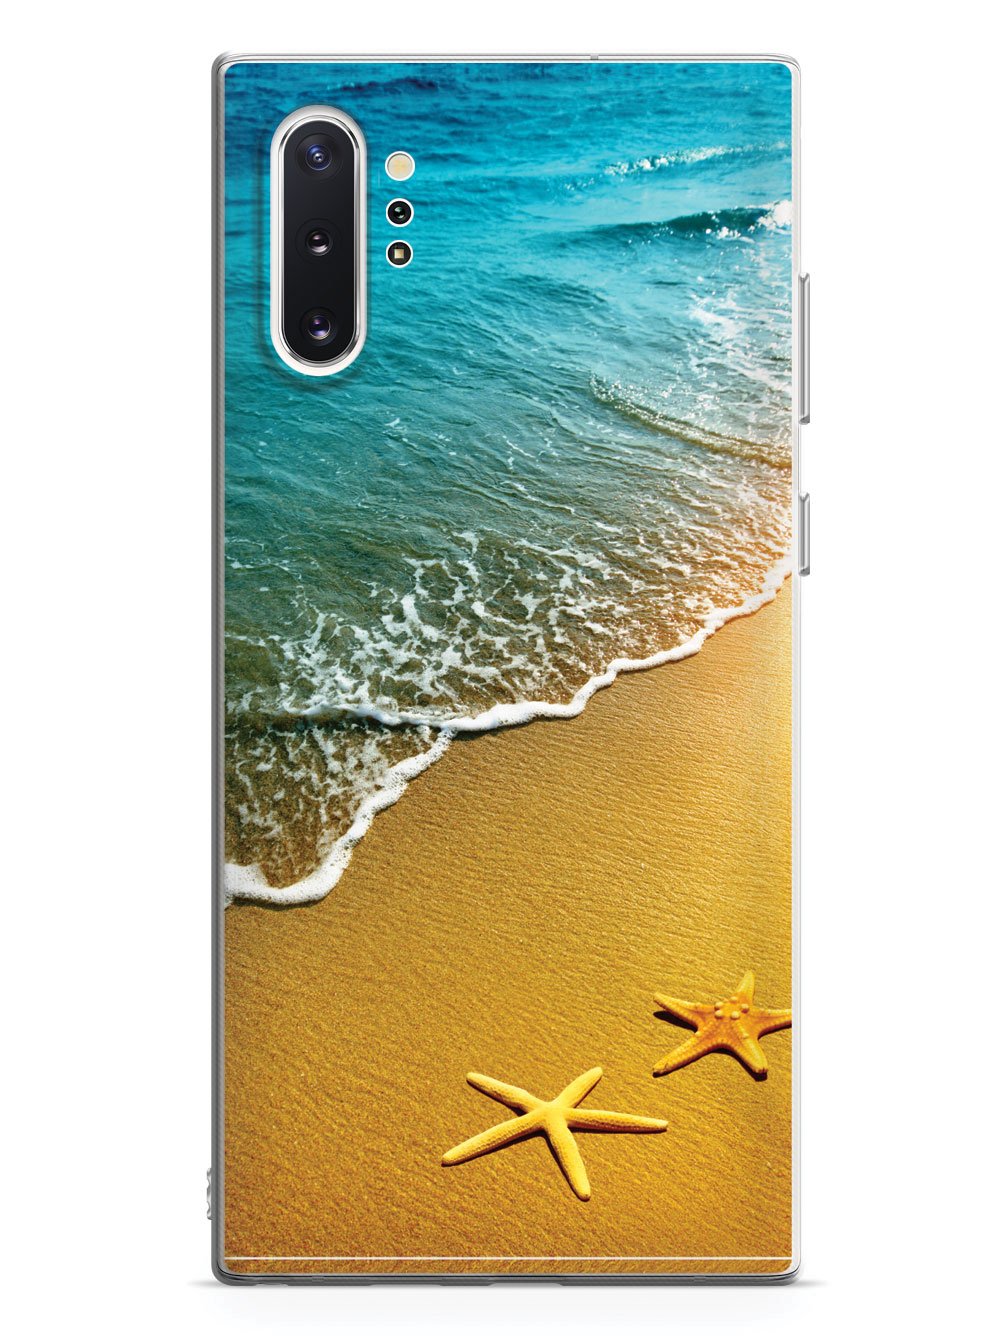 Starfish By The Sea Shore - White Case